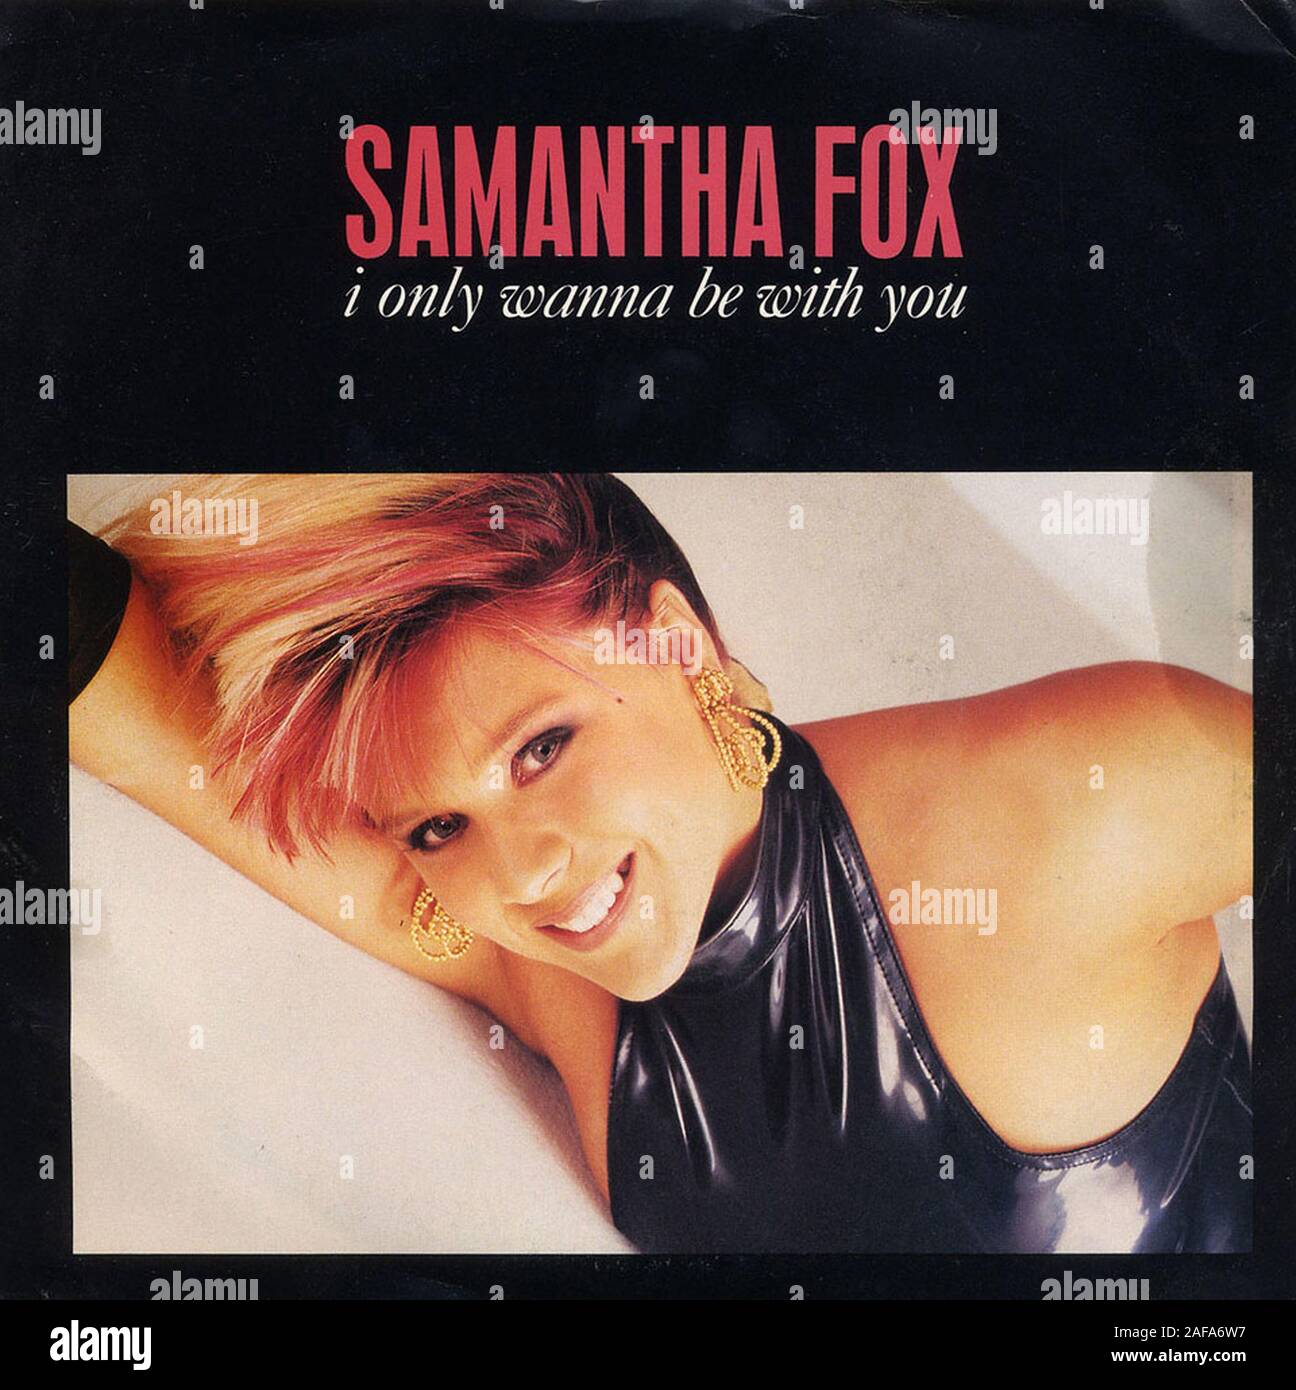 Samantha Fox - Ich Will Nur Mit Dir zu sein - Vintage Vinyl Album Cover  Stockfotografie - Alamy